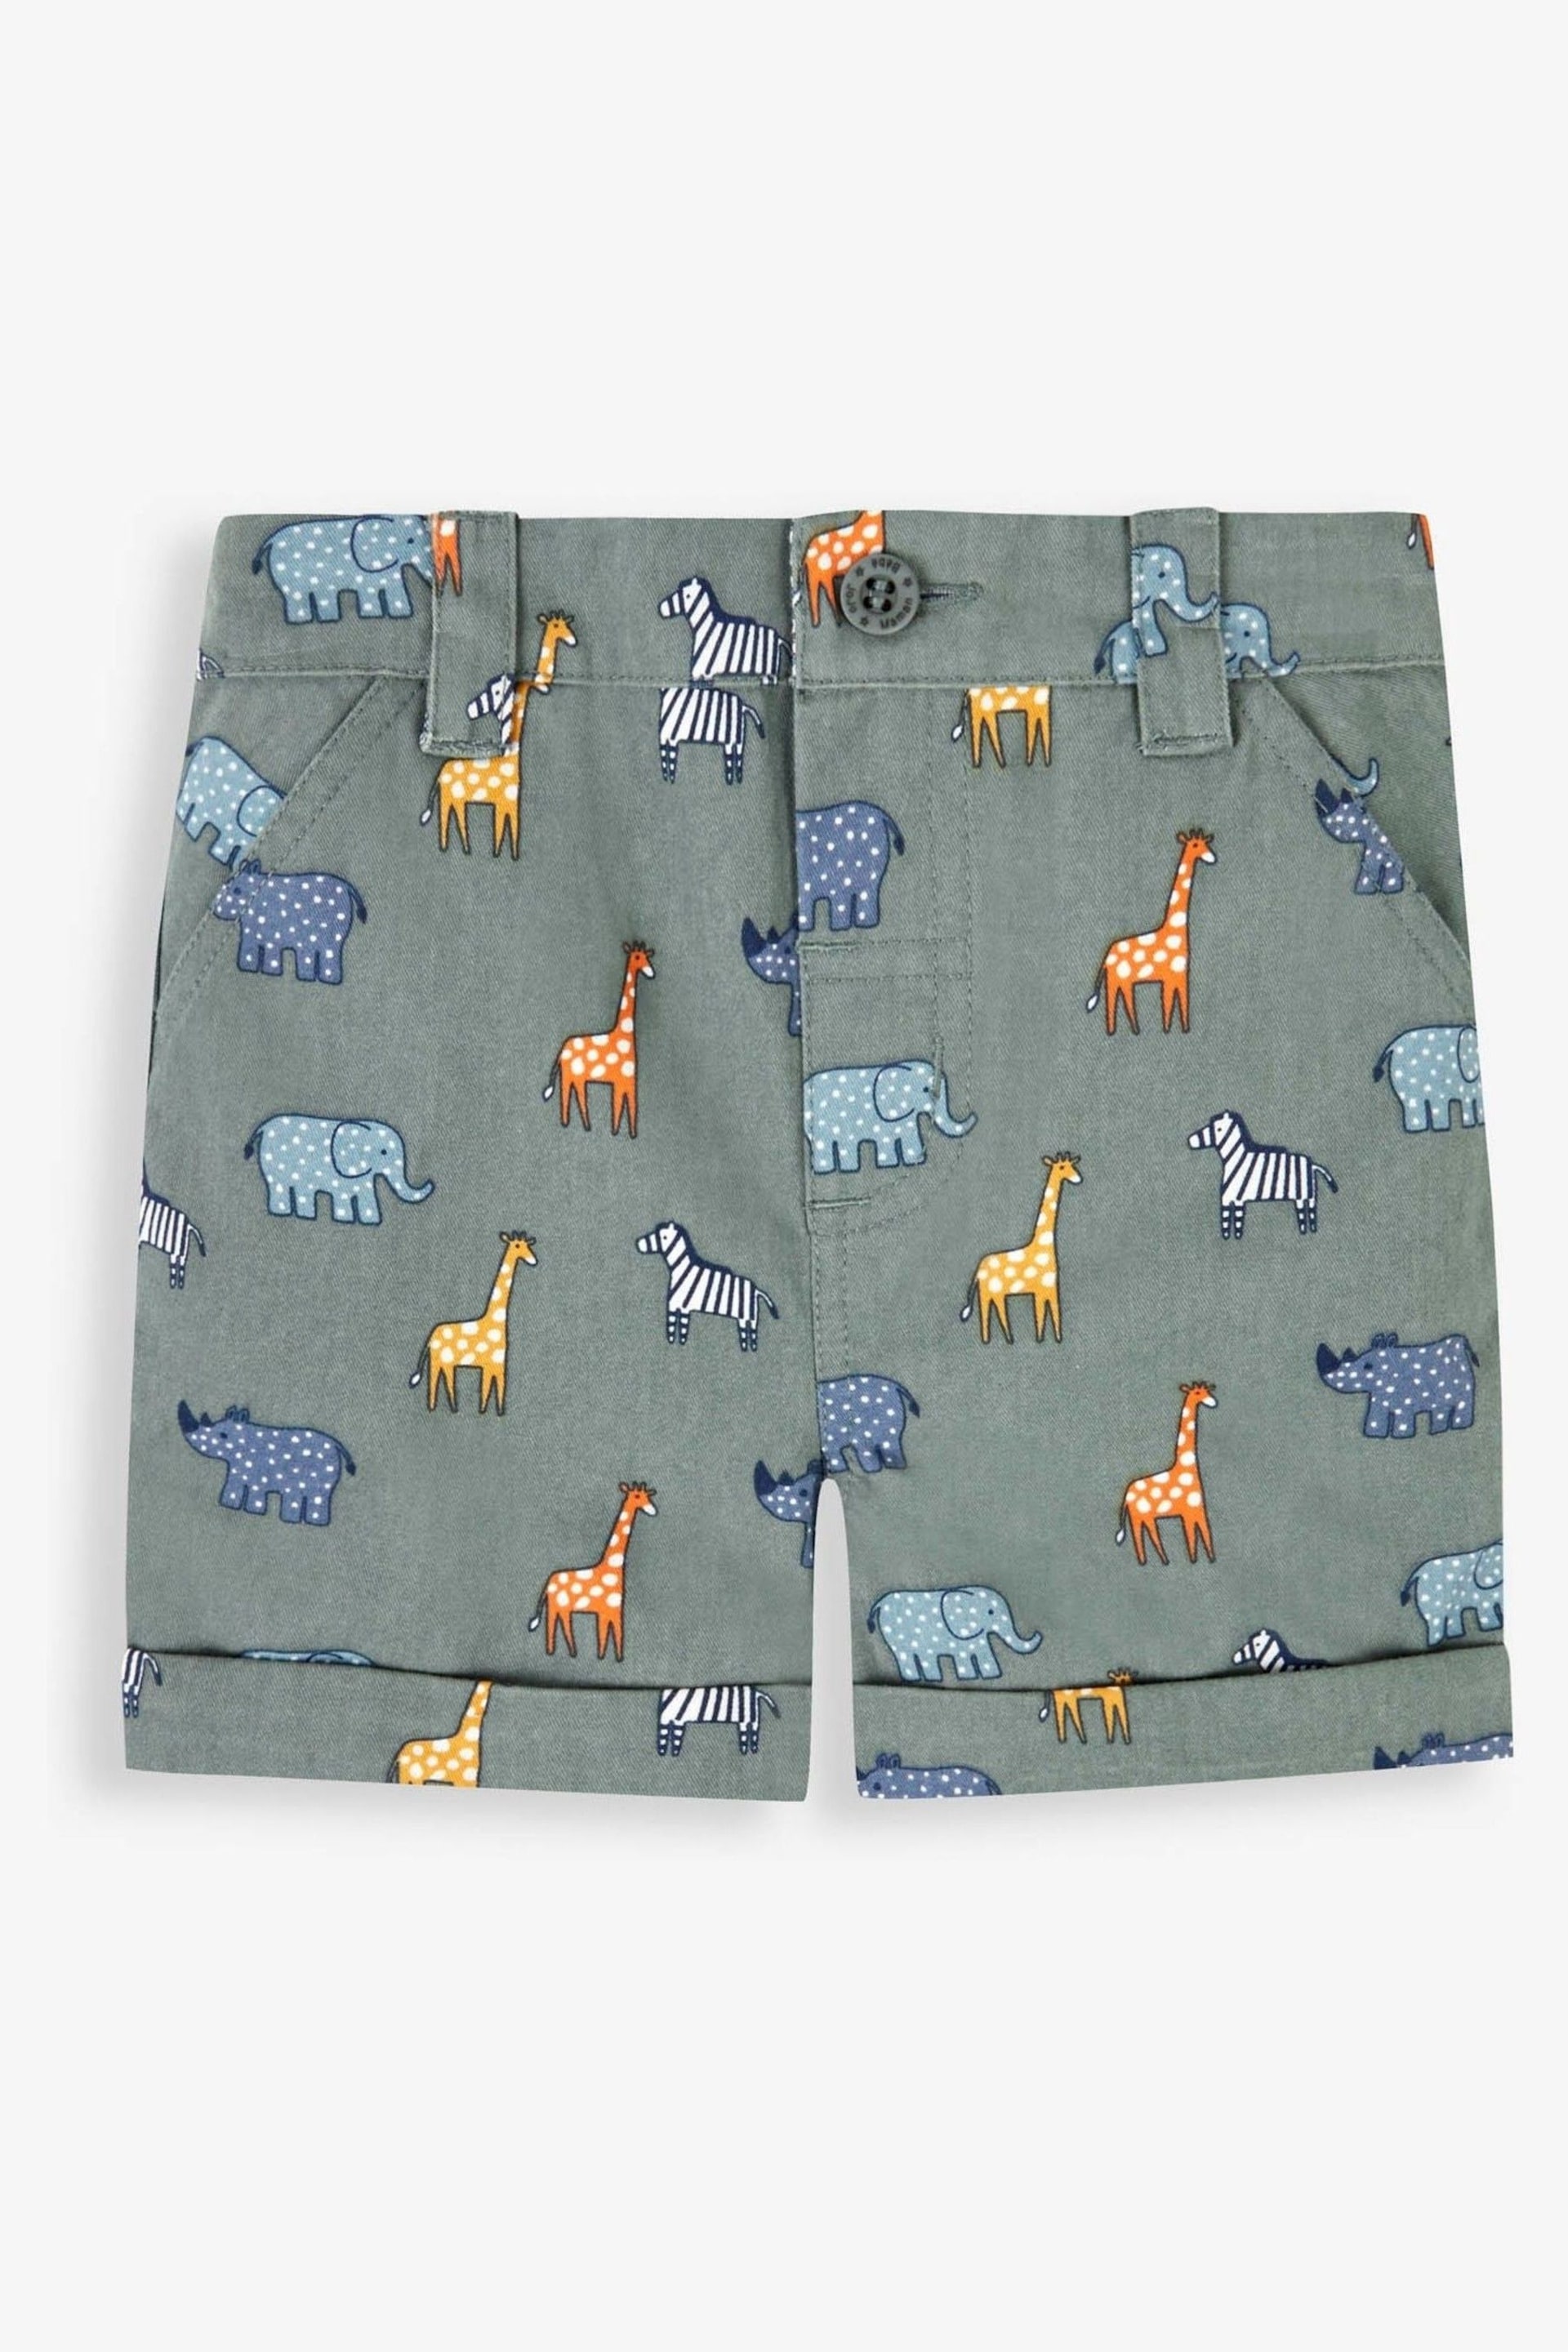 JoJo Maman Bébé Khaki Safari Animal Print Twill Chino Shorts - Image 3 of 4